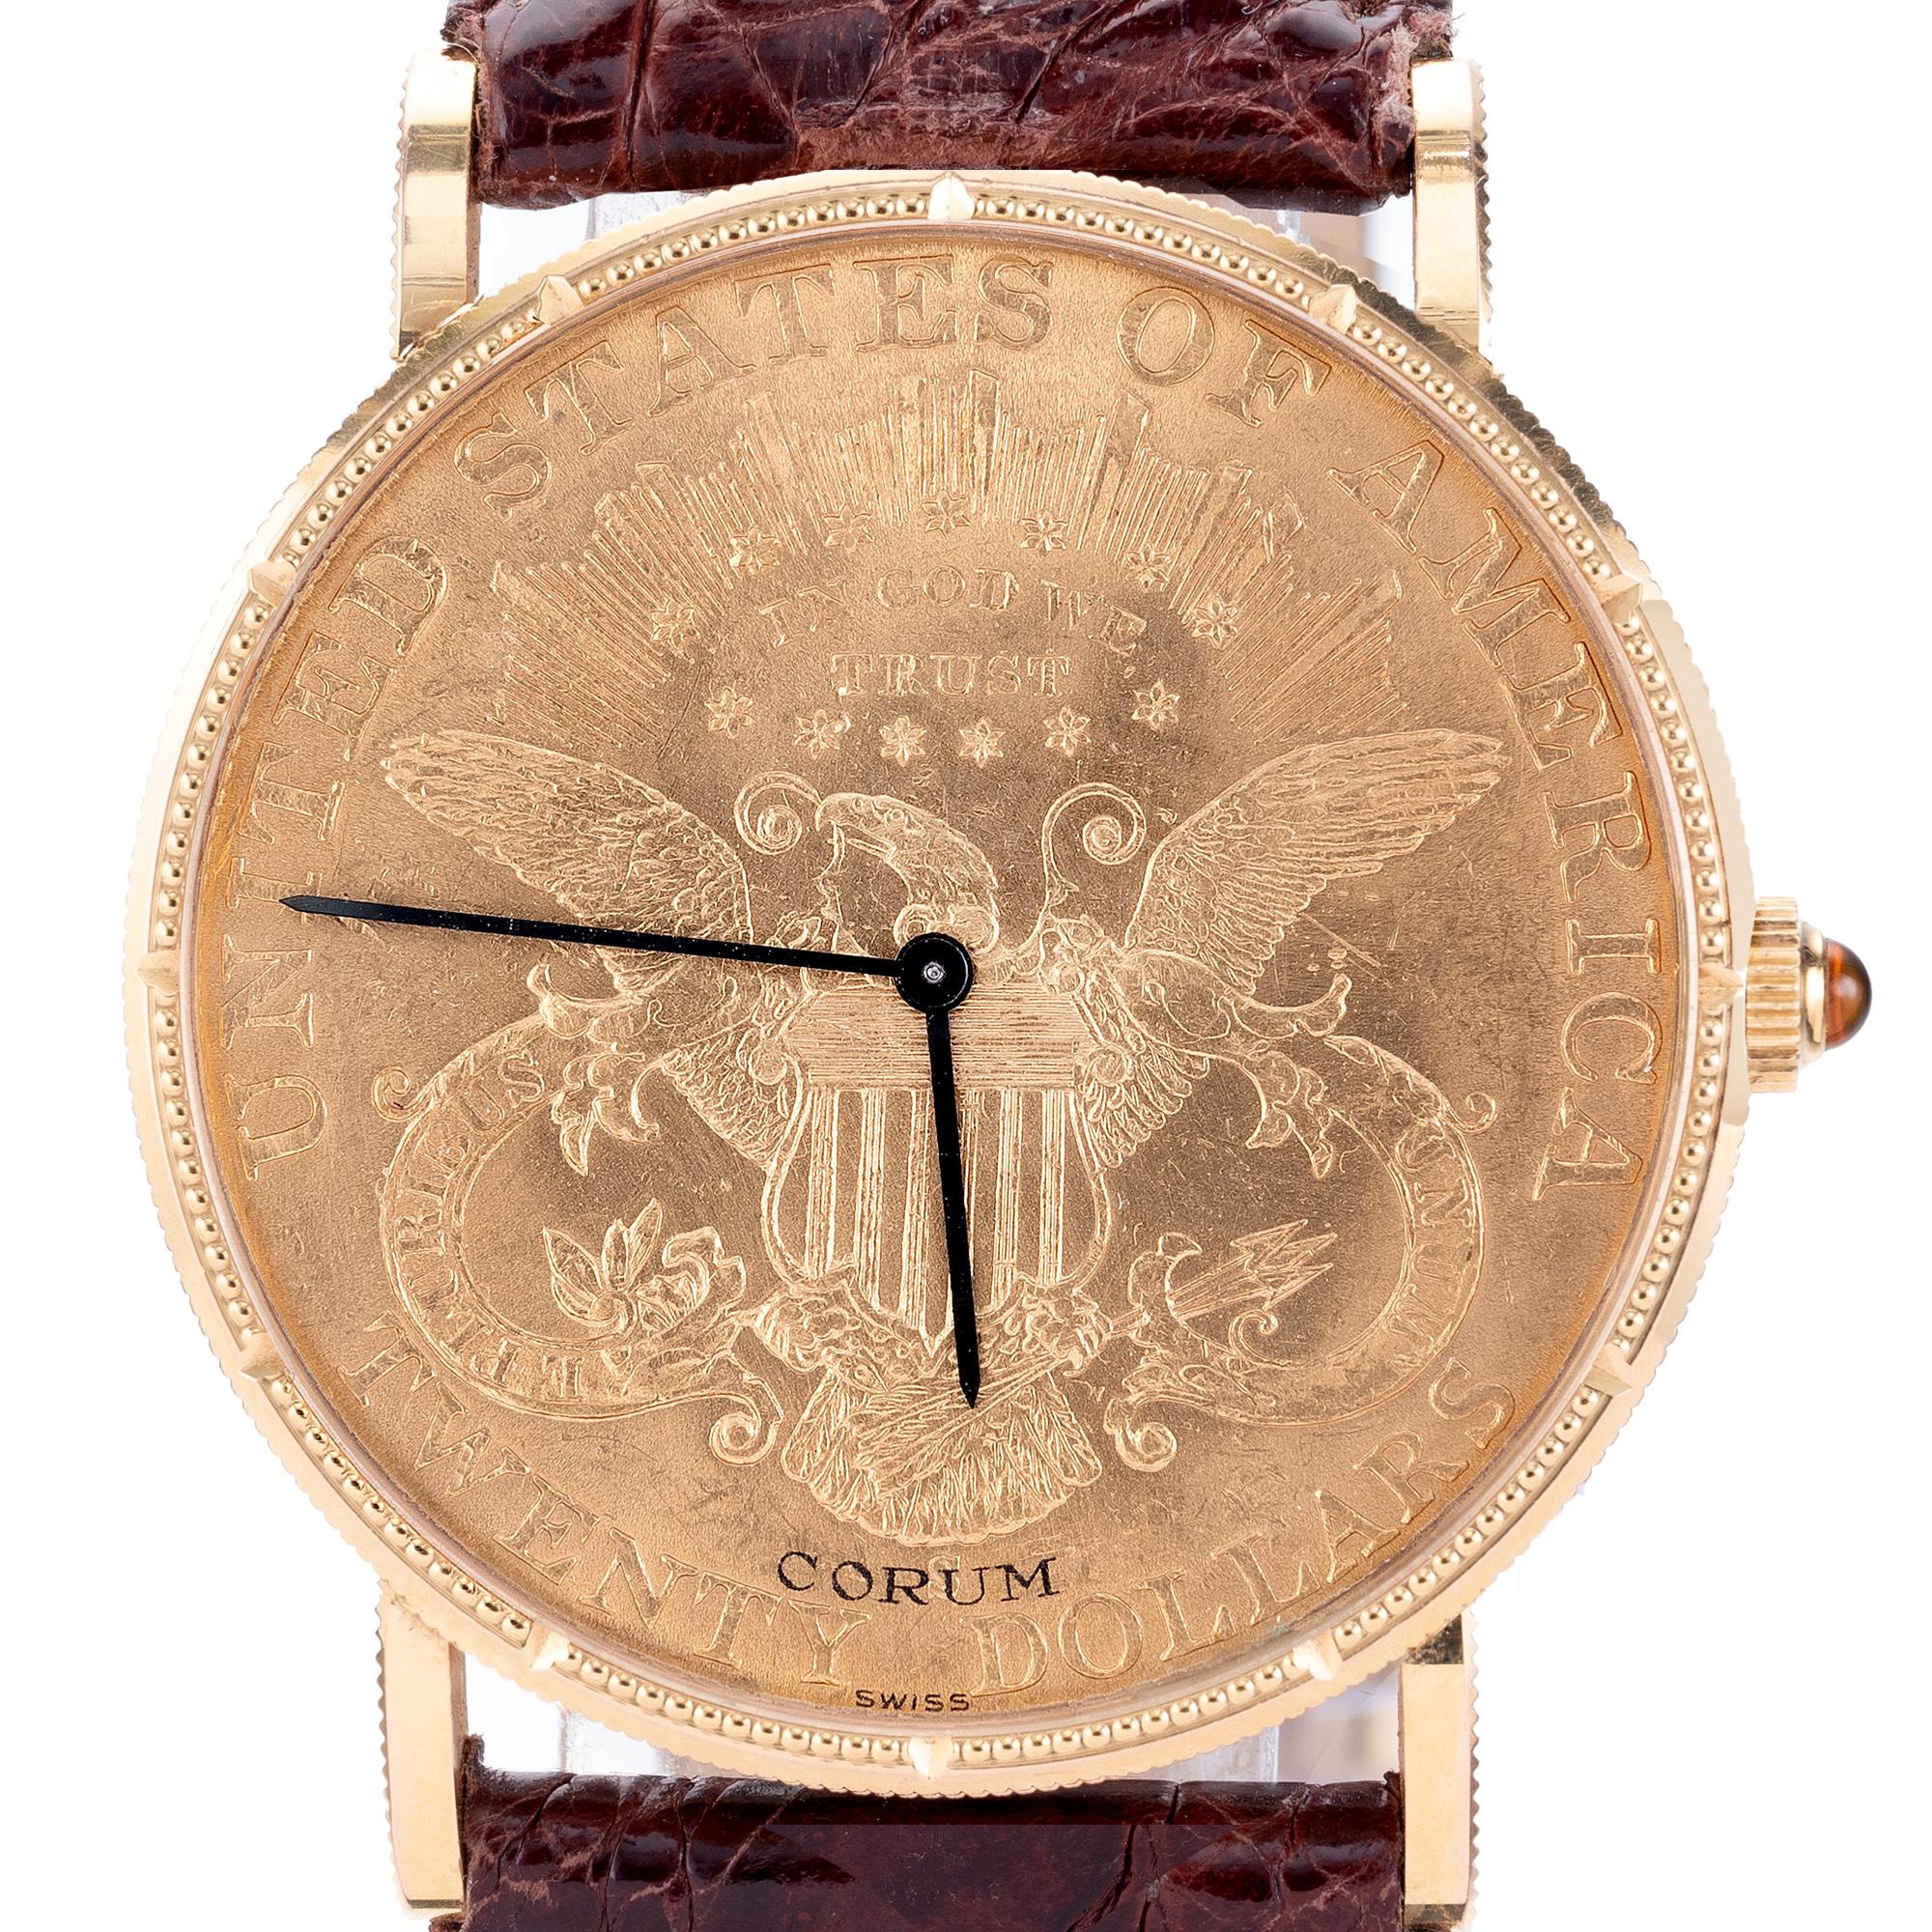 Herren Corum 18k Gelbgold US Zwanzig Dollar 1904 Münze Uhr. Im Inneren dieses Zeitmessers befindet sich ein vollständig gewartetes und garantiertes 18-steiniges Handaufzugswerk, das die Zeit präzise und genau hält. Die Uhr hat eine Gehäusegröße von